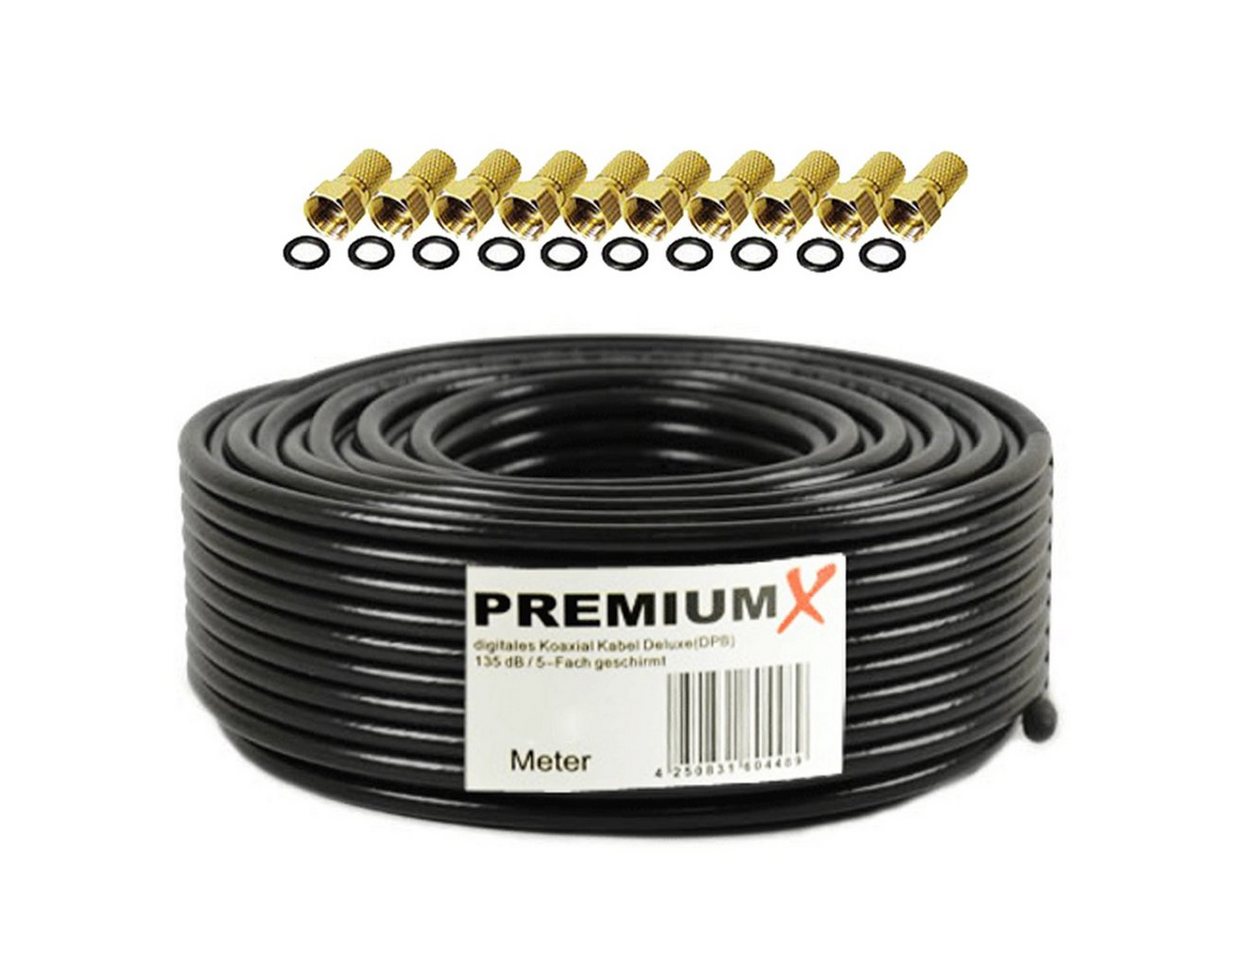 PremiumX 50m DELUXE PRO Koaxial Kabel SCHWARZ 135dB 5-Fach Kupfer 10x F-Stecker SAT-Kabel von PremiumX